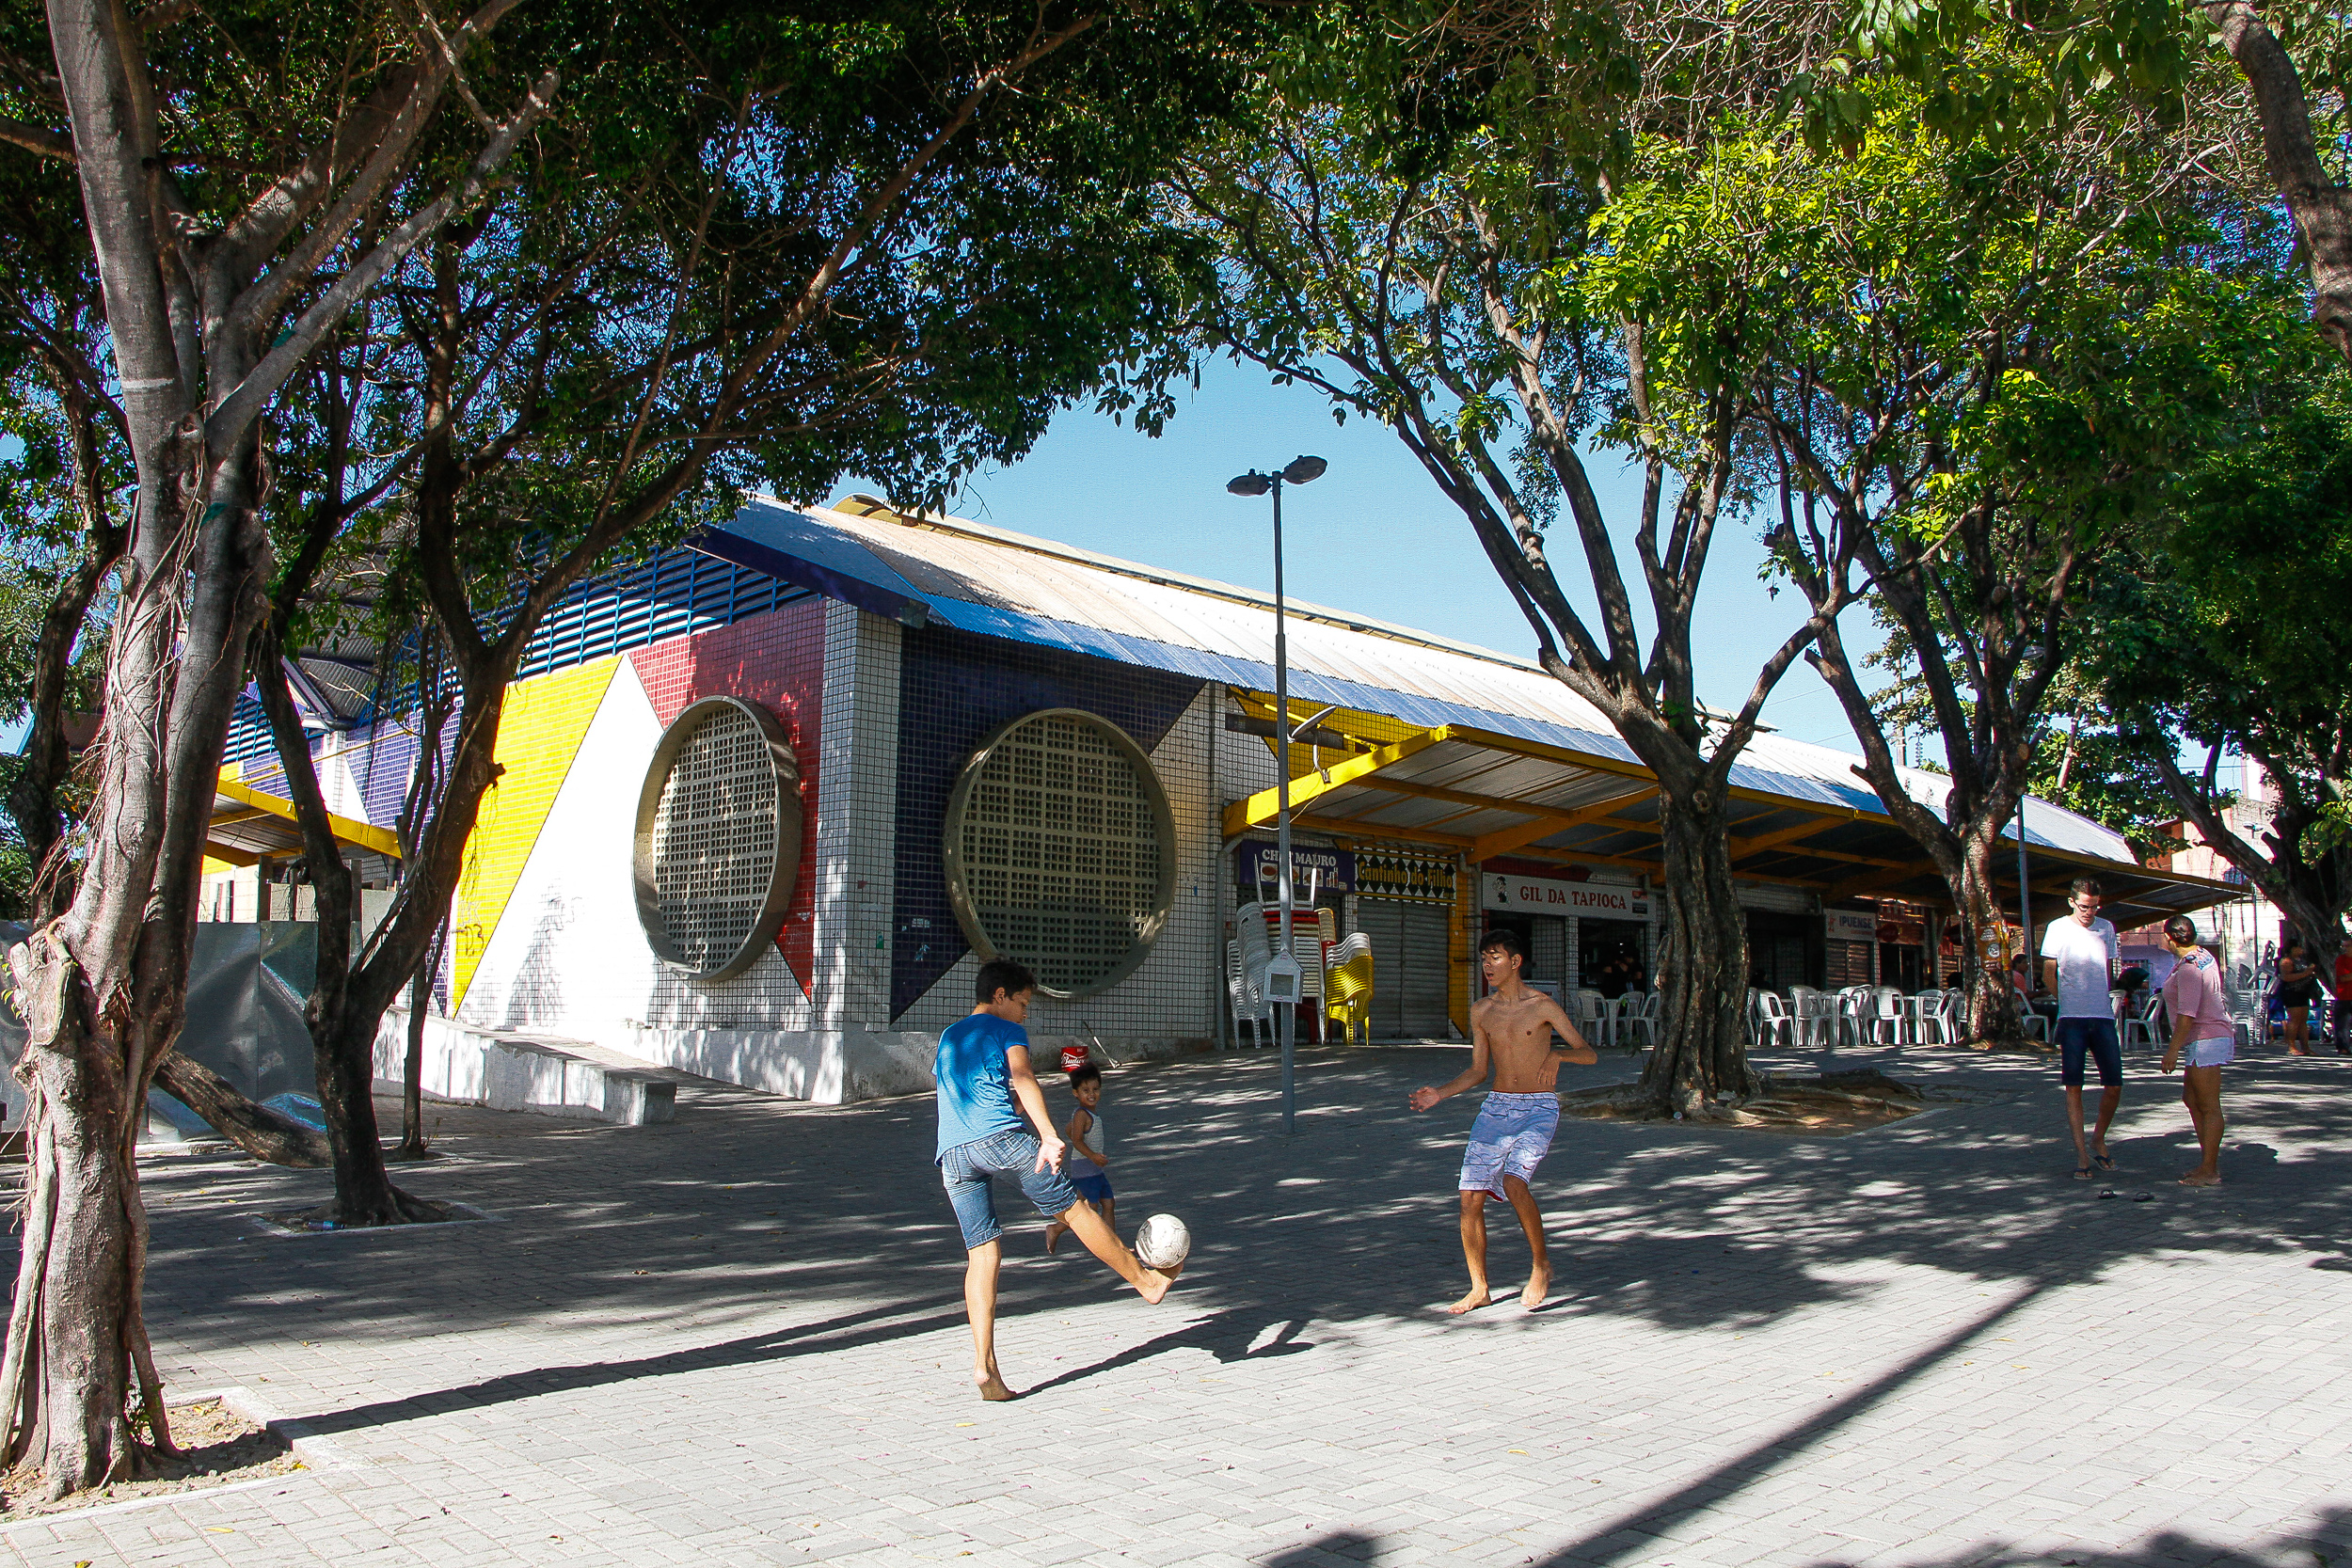 Crianças brincando em frente à fachada principal do Mercado Joaquim Távora.